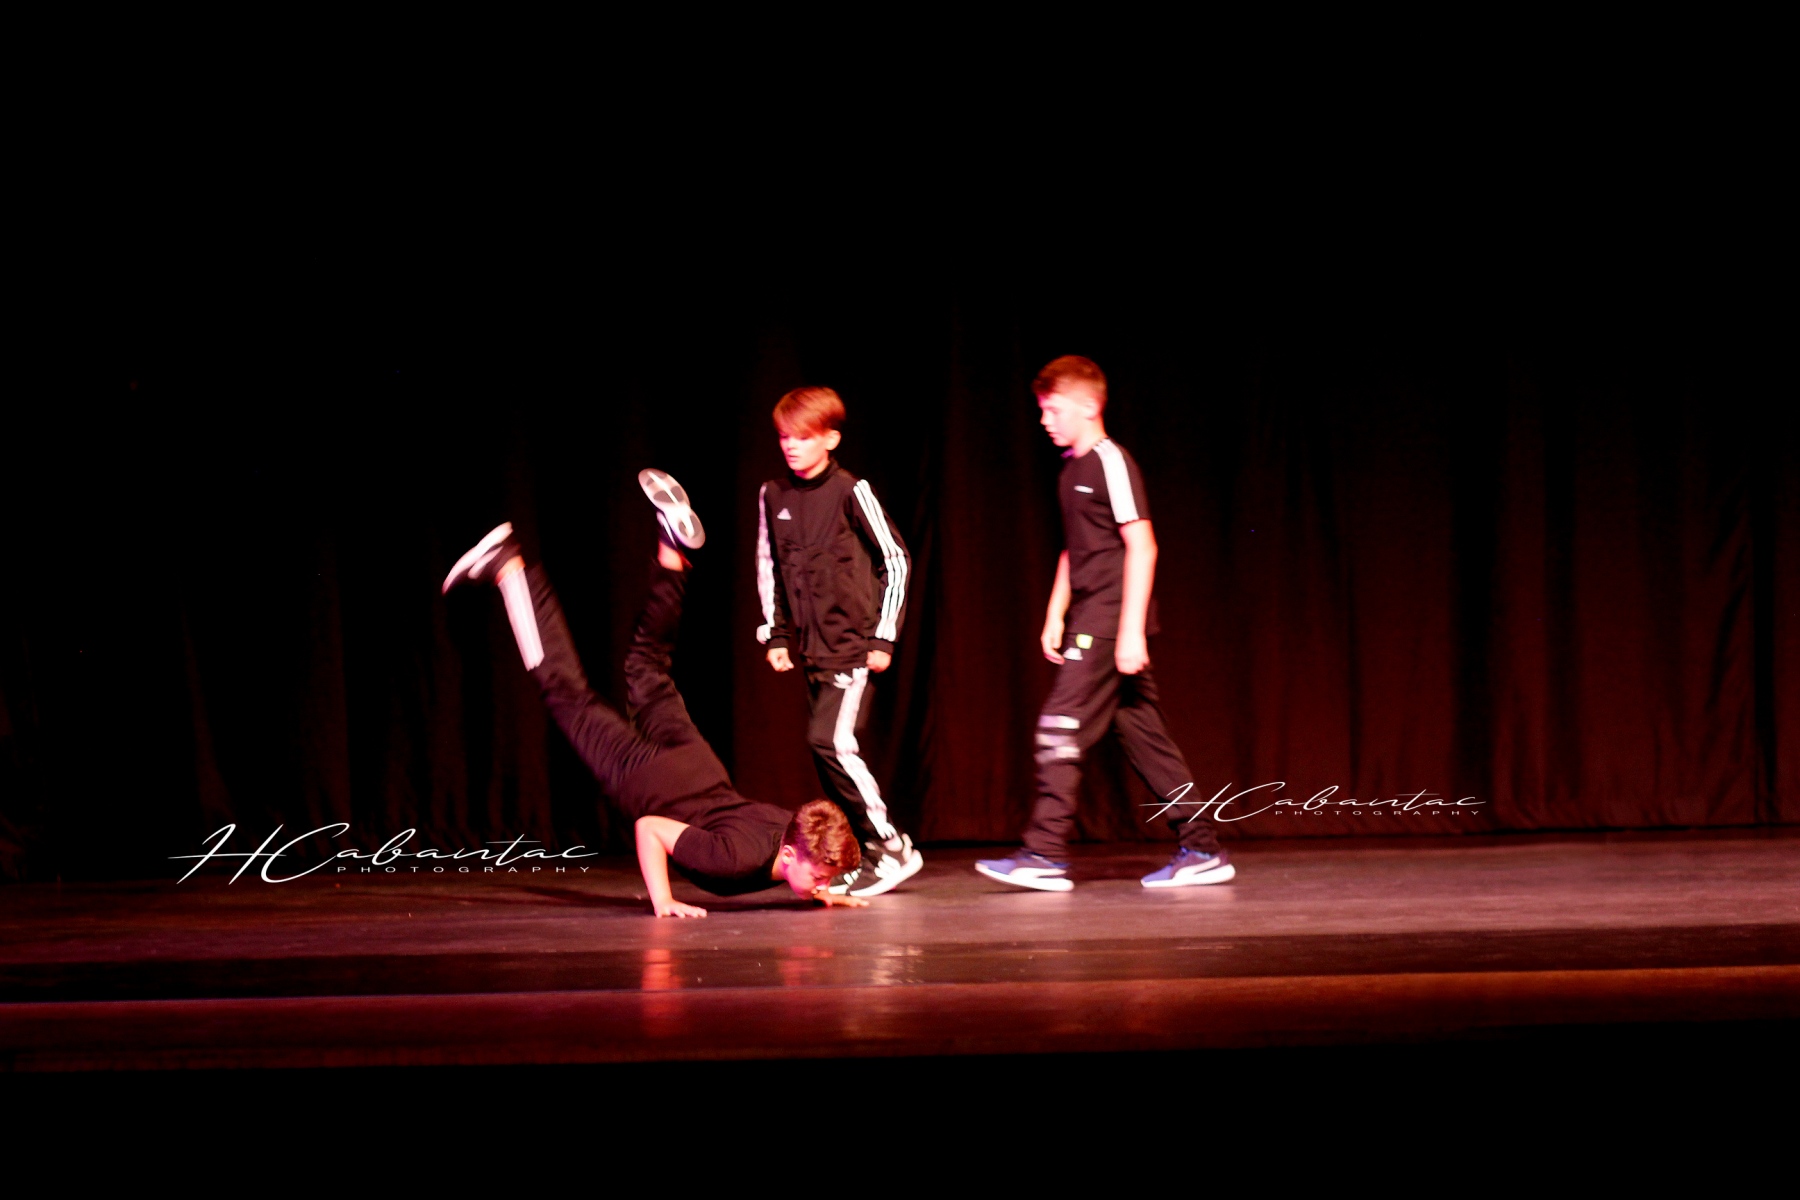 Breakdance 1